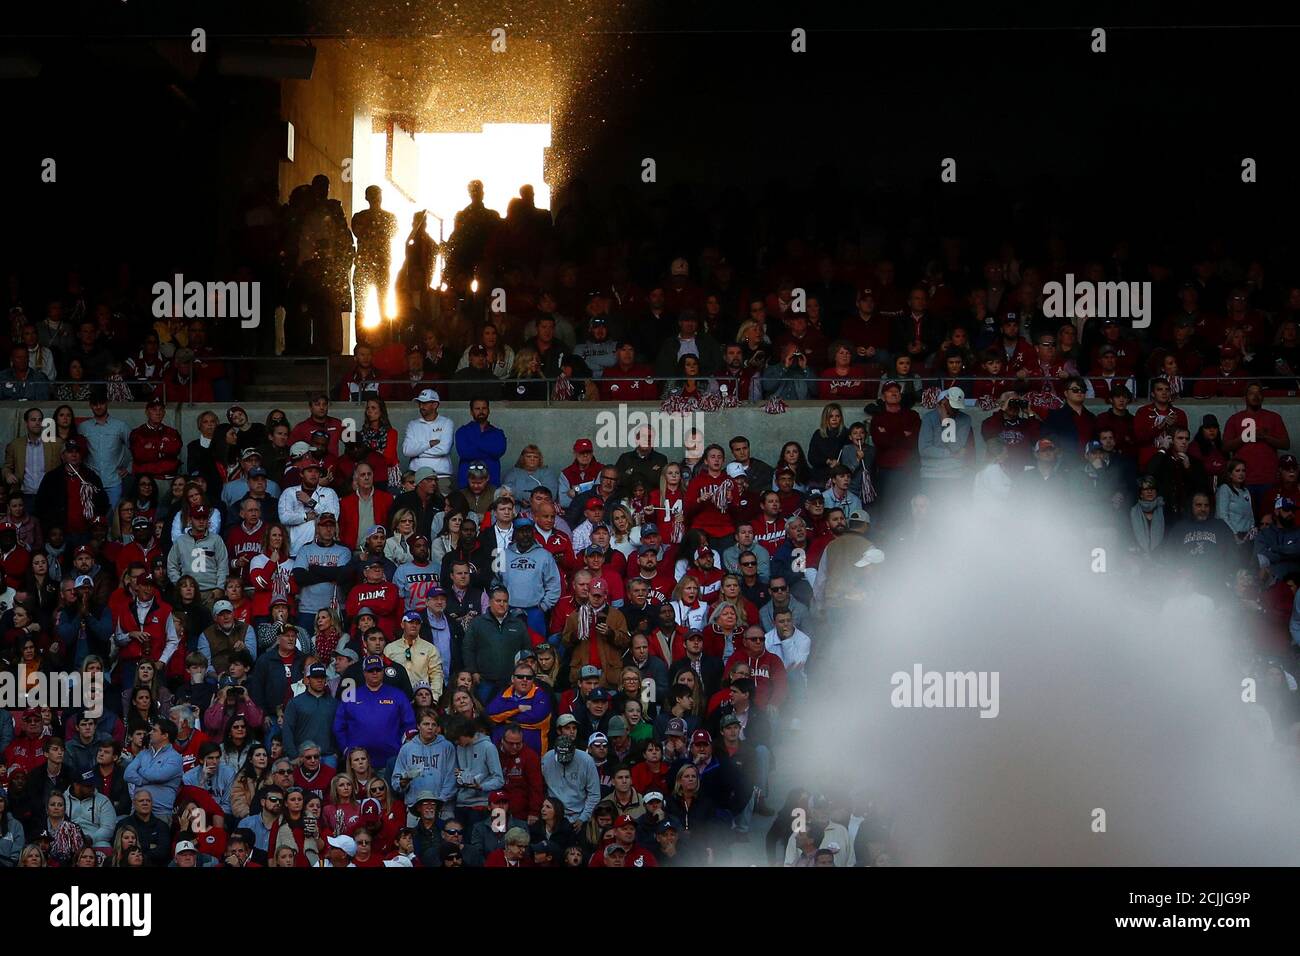 La lumière du soleil brille à travers un tunnel pendant la N.C.A.A. Match de football de la Division I entre l'Université d'État de Louisiane et l'Université d'Alabama au stade Bryant-Denny à Tuscaloosa, Alabama, États-Unis, le 9 novembre 2019. REUTERS/Tom Brenner Banque D'Images